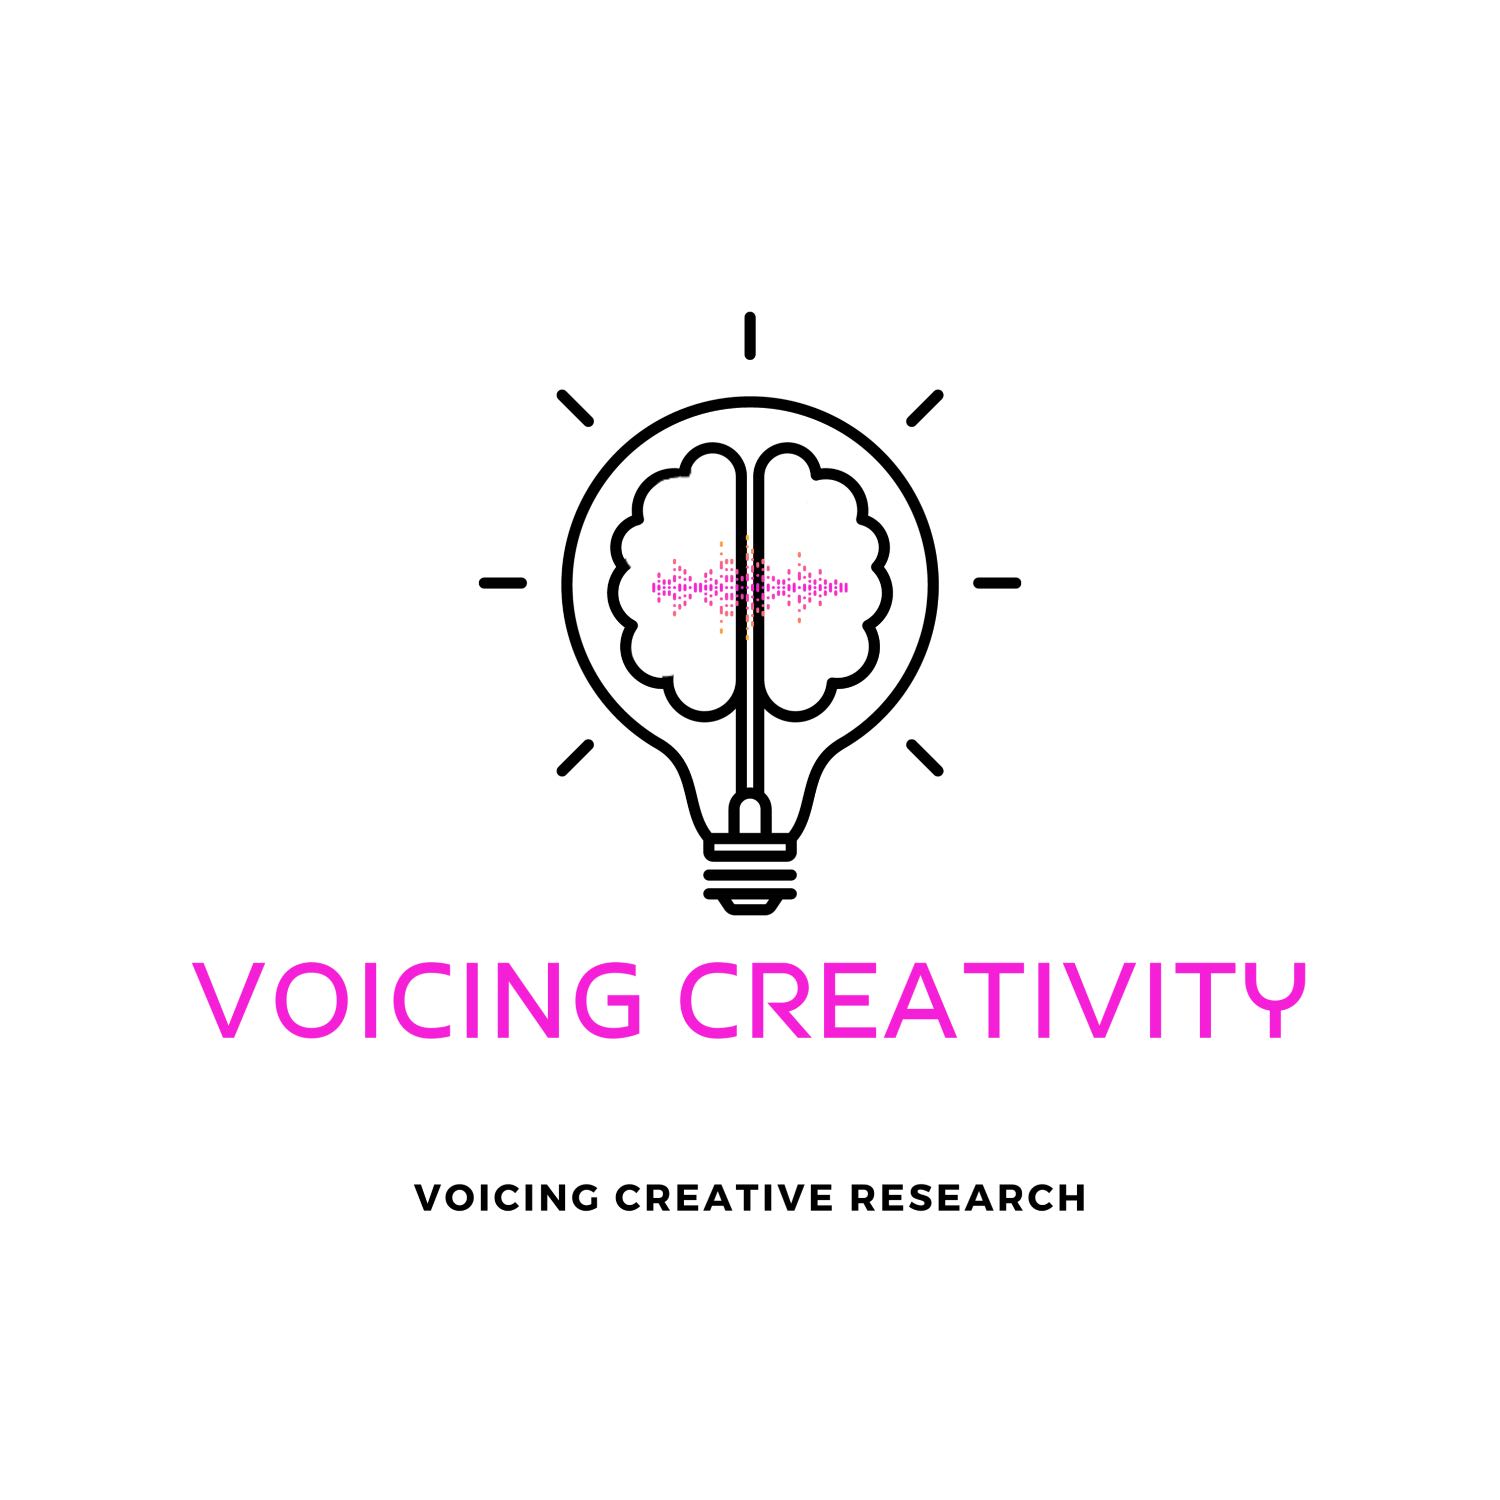 Voicing Creativity - Episode 6 - Dr. Julie Rak